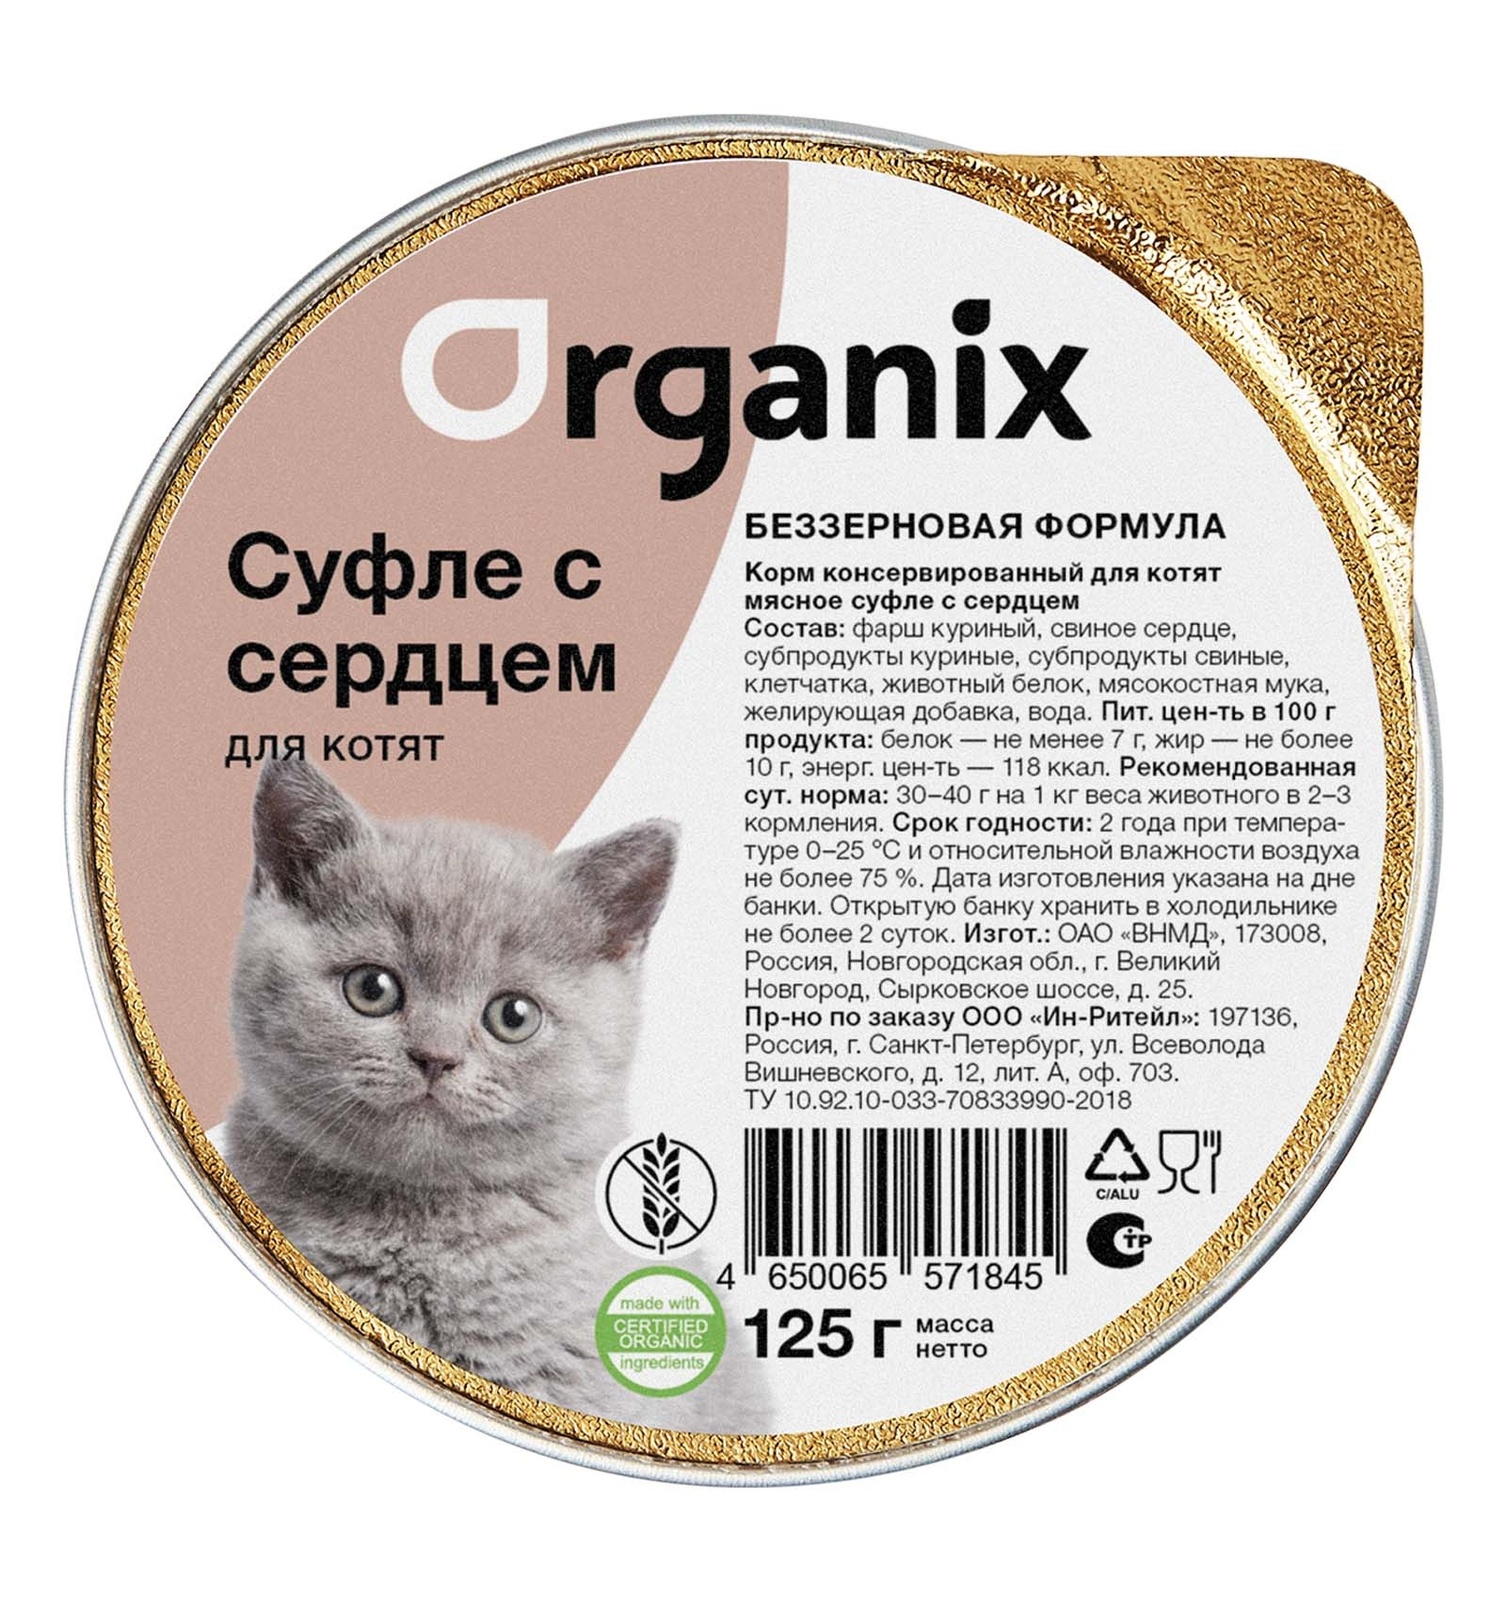 Organix мясное суфле с сердцем для котят (125 г)